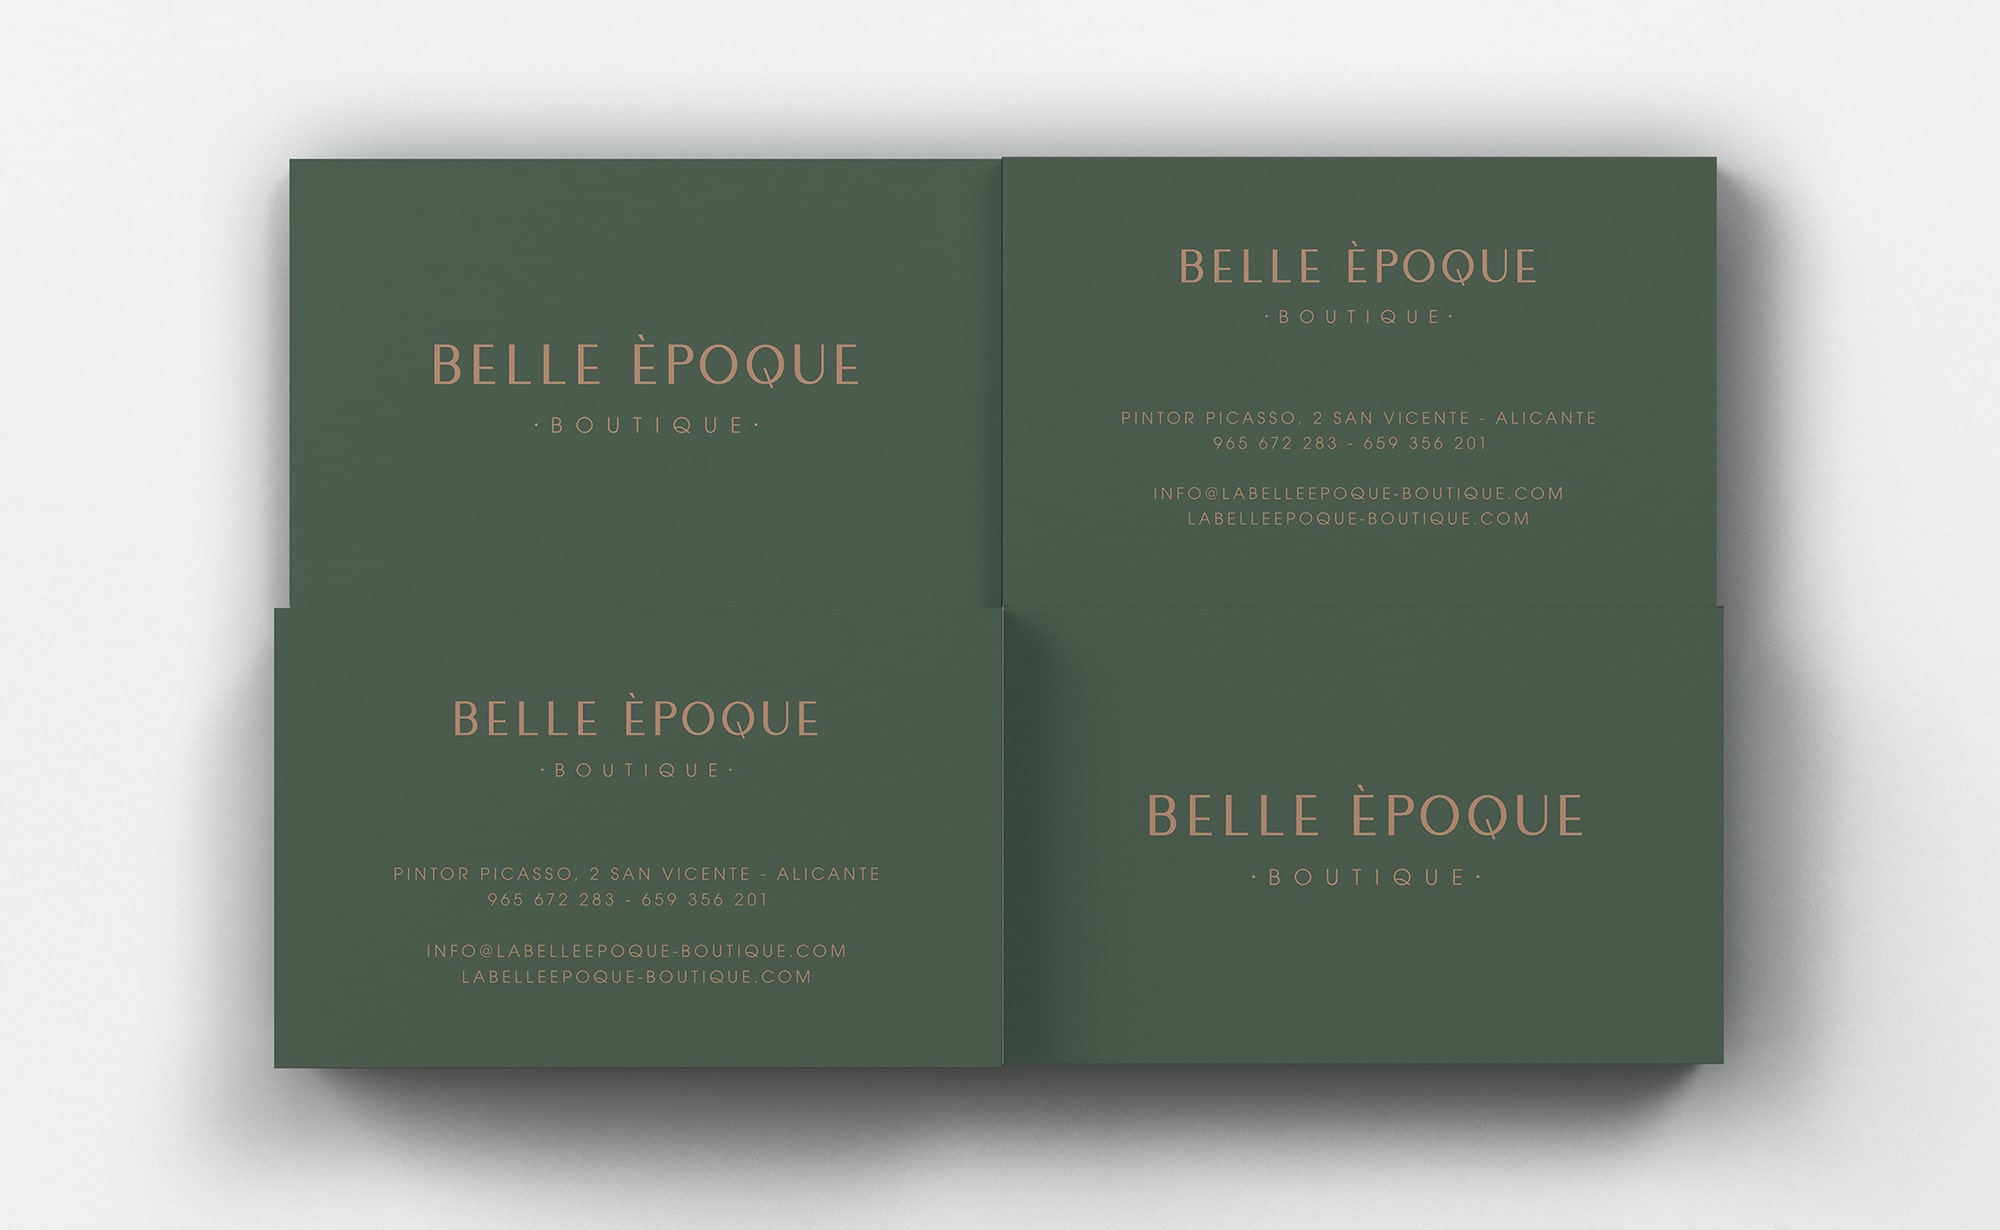 Diseño y desarrollo de identidad visual corporativa para Belle Èpoque. Tarjeta de visita.